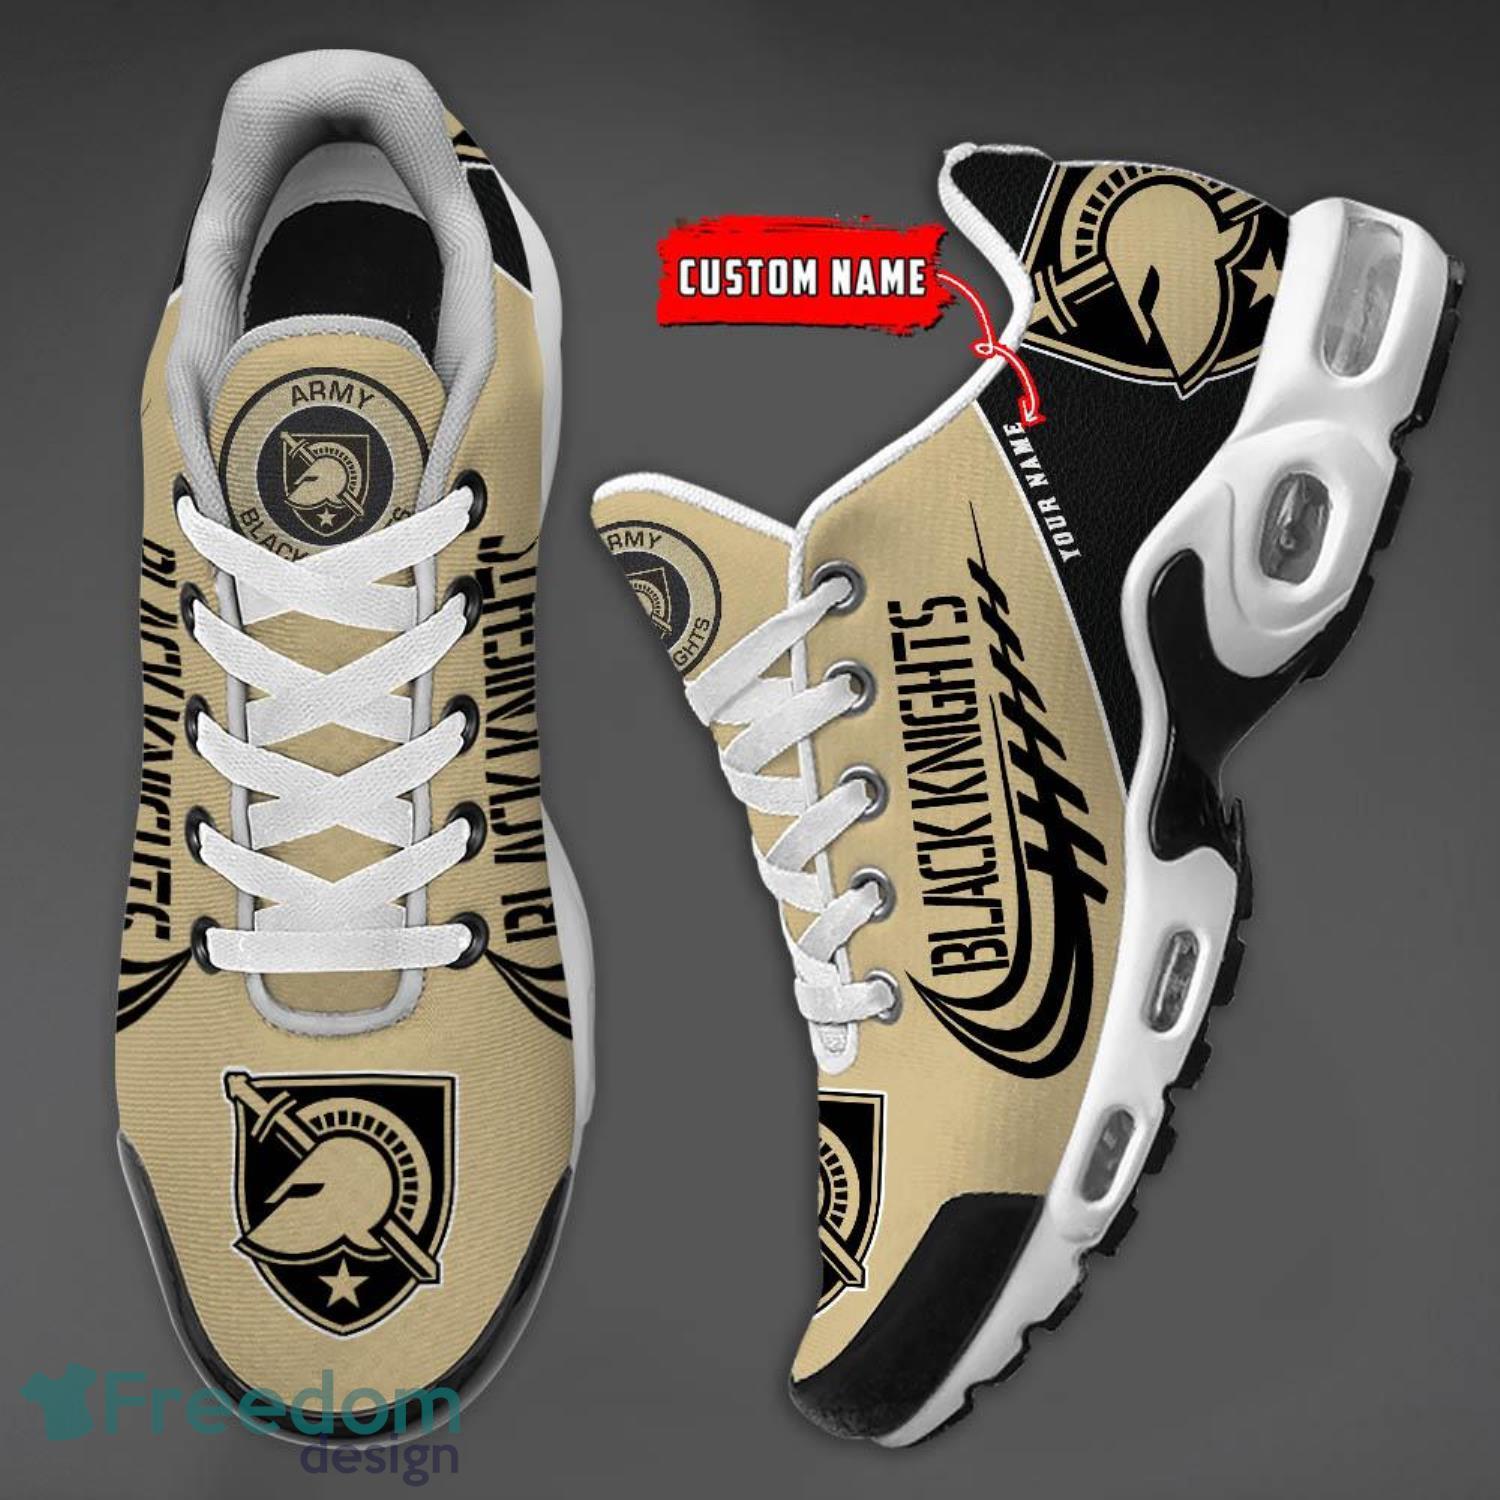 Army Black Knights Sport Team Air Jordan 13 Custom Name Sneakers